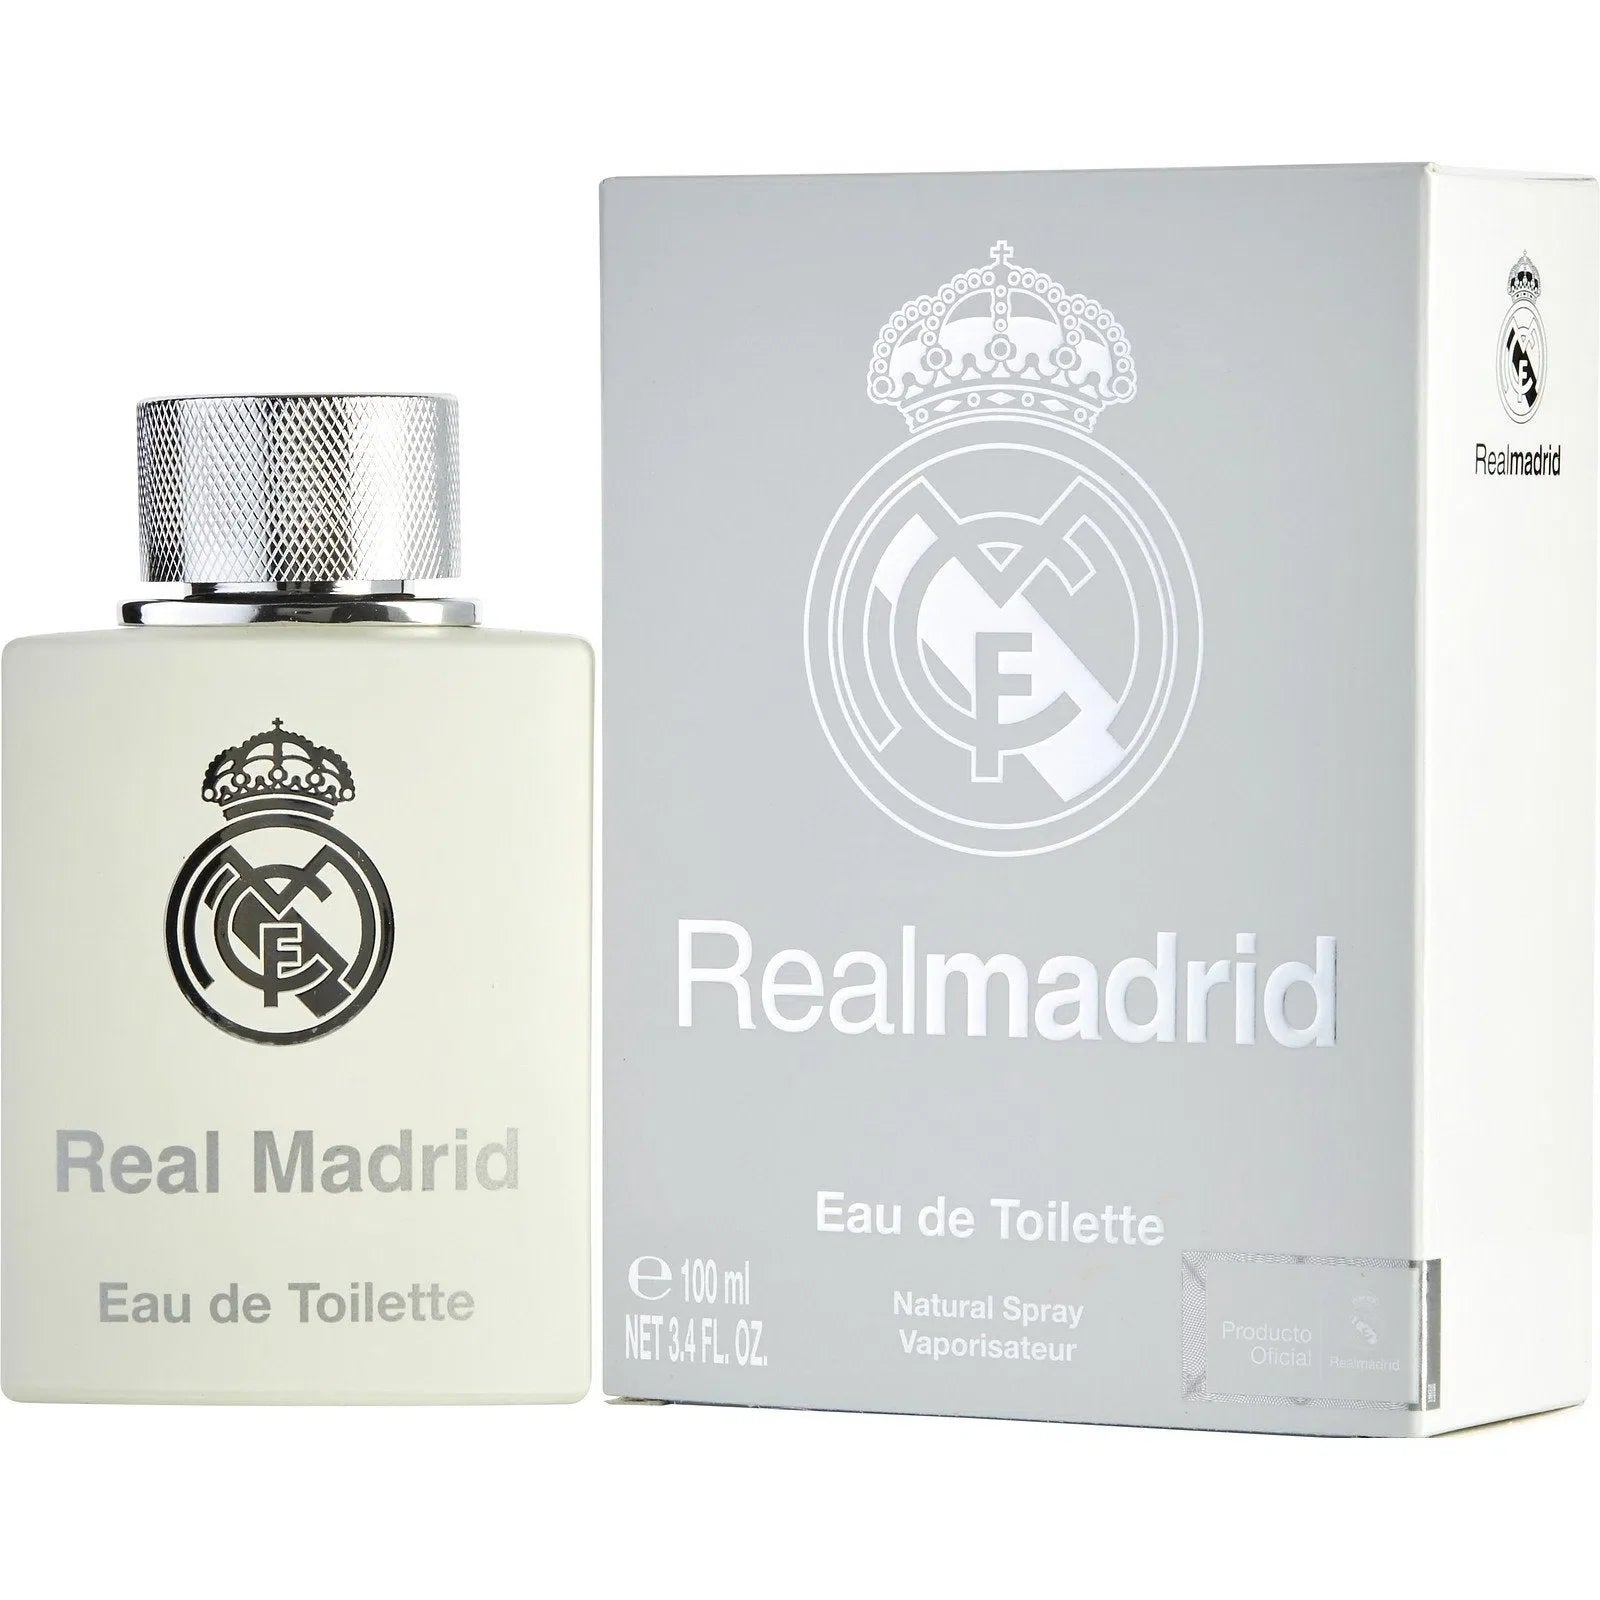 Perfume Football Club Real Madrid EDT (M) / 100 ml - 663350072297- Prive Perfumes Honduras